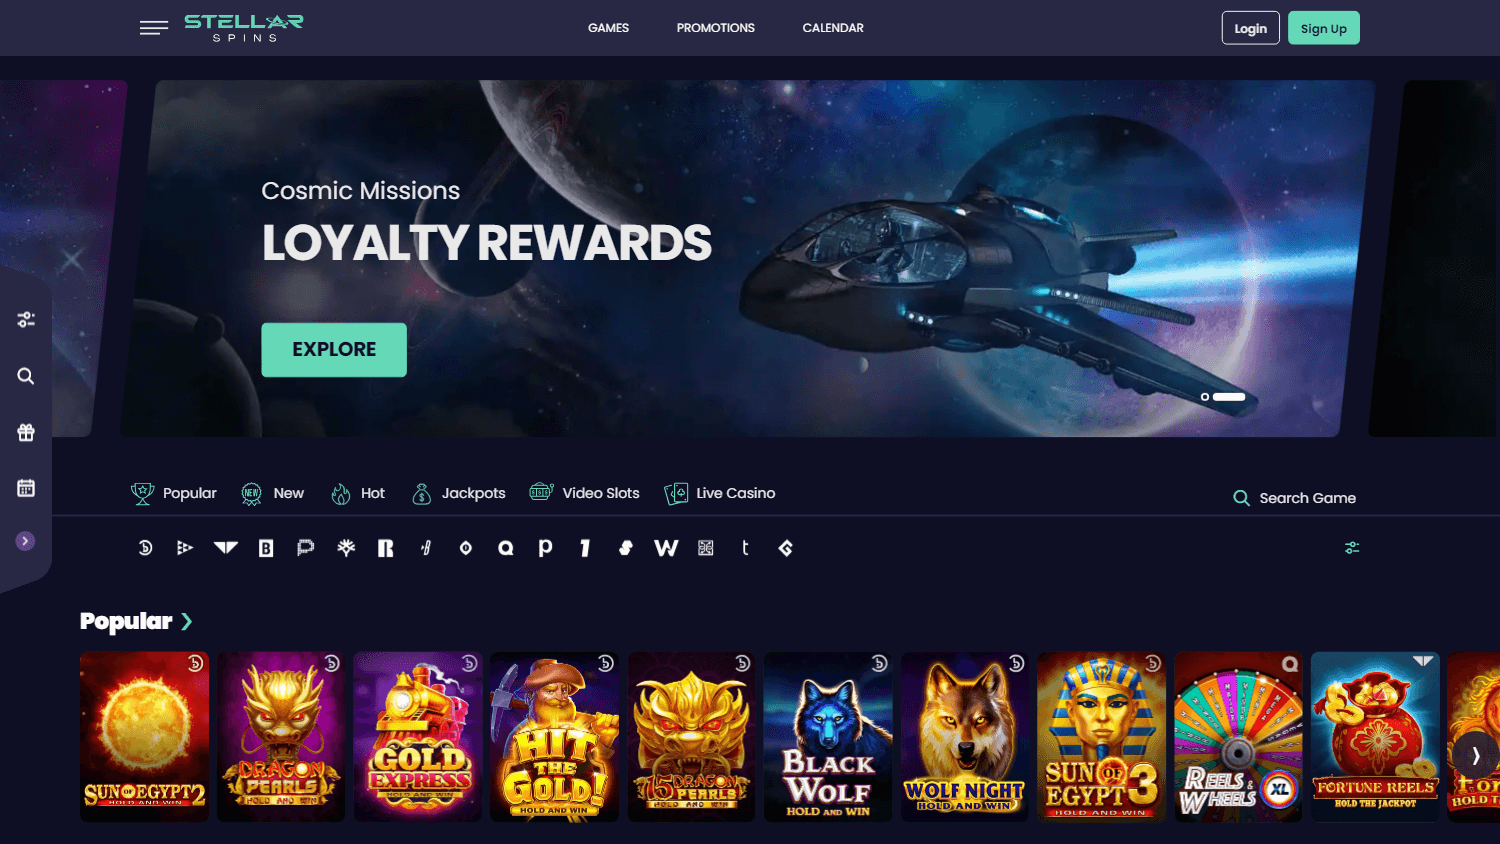 stellar_spins_casino_homepage_desktop